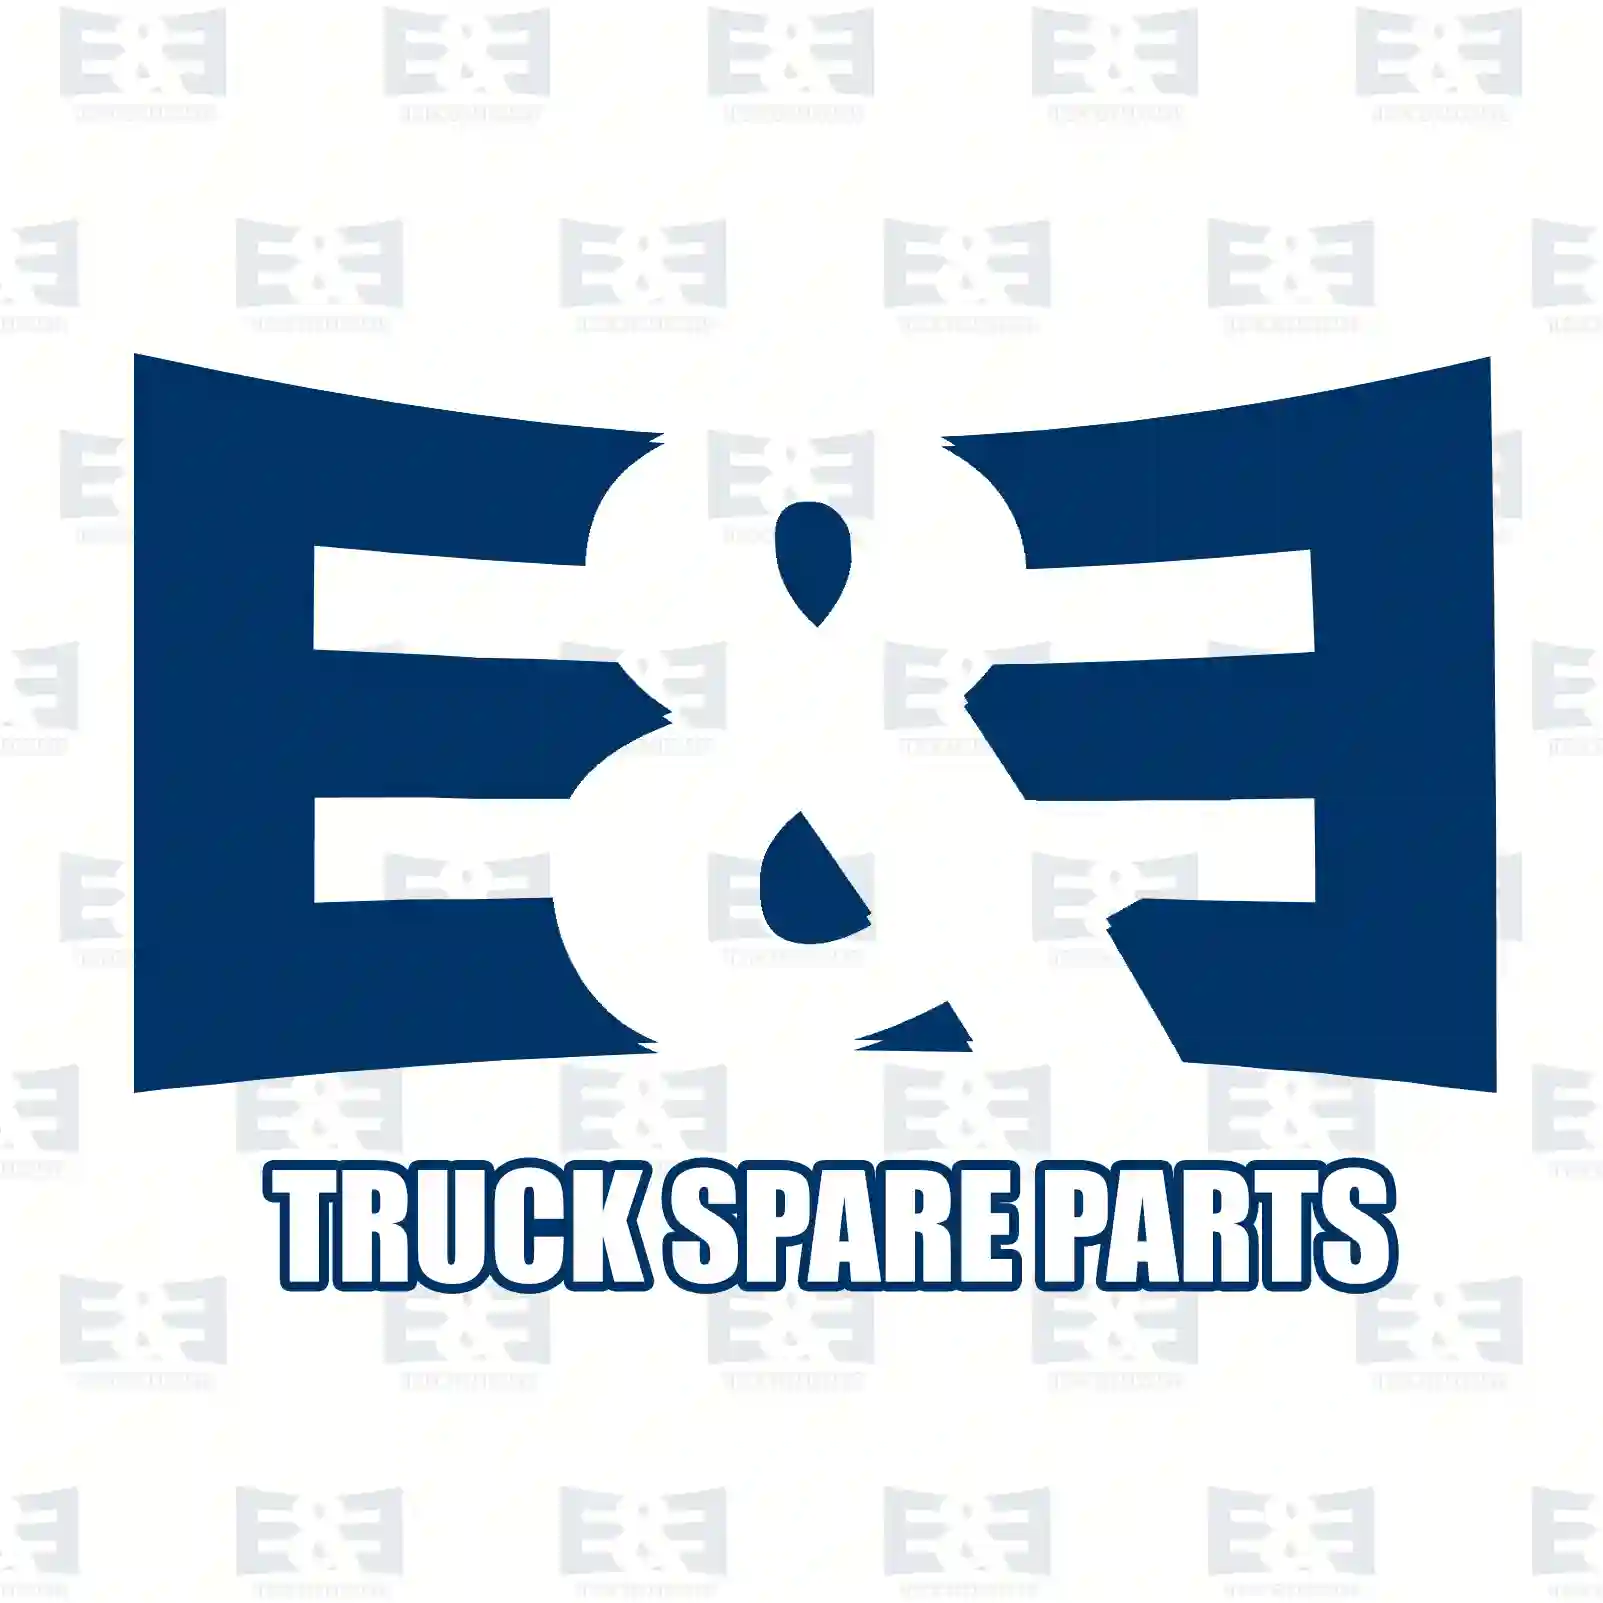 Oil seal, 2E2279172, 7401652776, 1652776, ZG02639-0008, , ||  2E2279172 E&E Truck Spare Parts | Truck Spare Parts, Auotomotive Spare Parts Oil seal, 2E2279172, 7401652776, 1652776, ZG02639-0008, , ||  2E2279172 E&E Truck Spare Parts | Truck Spare Parts, Auotomotive Spare Parts